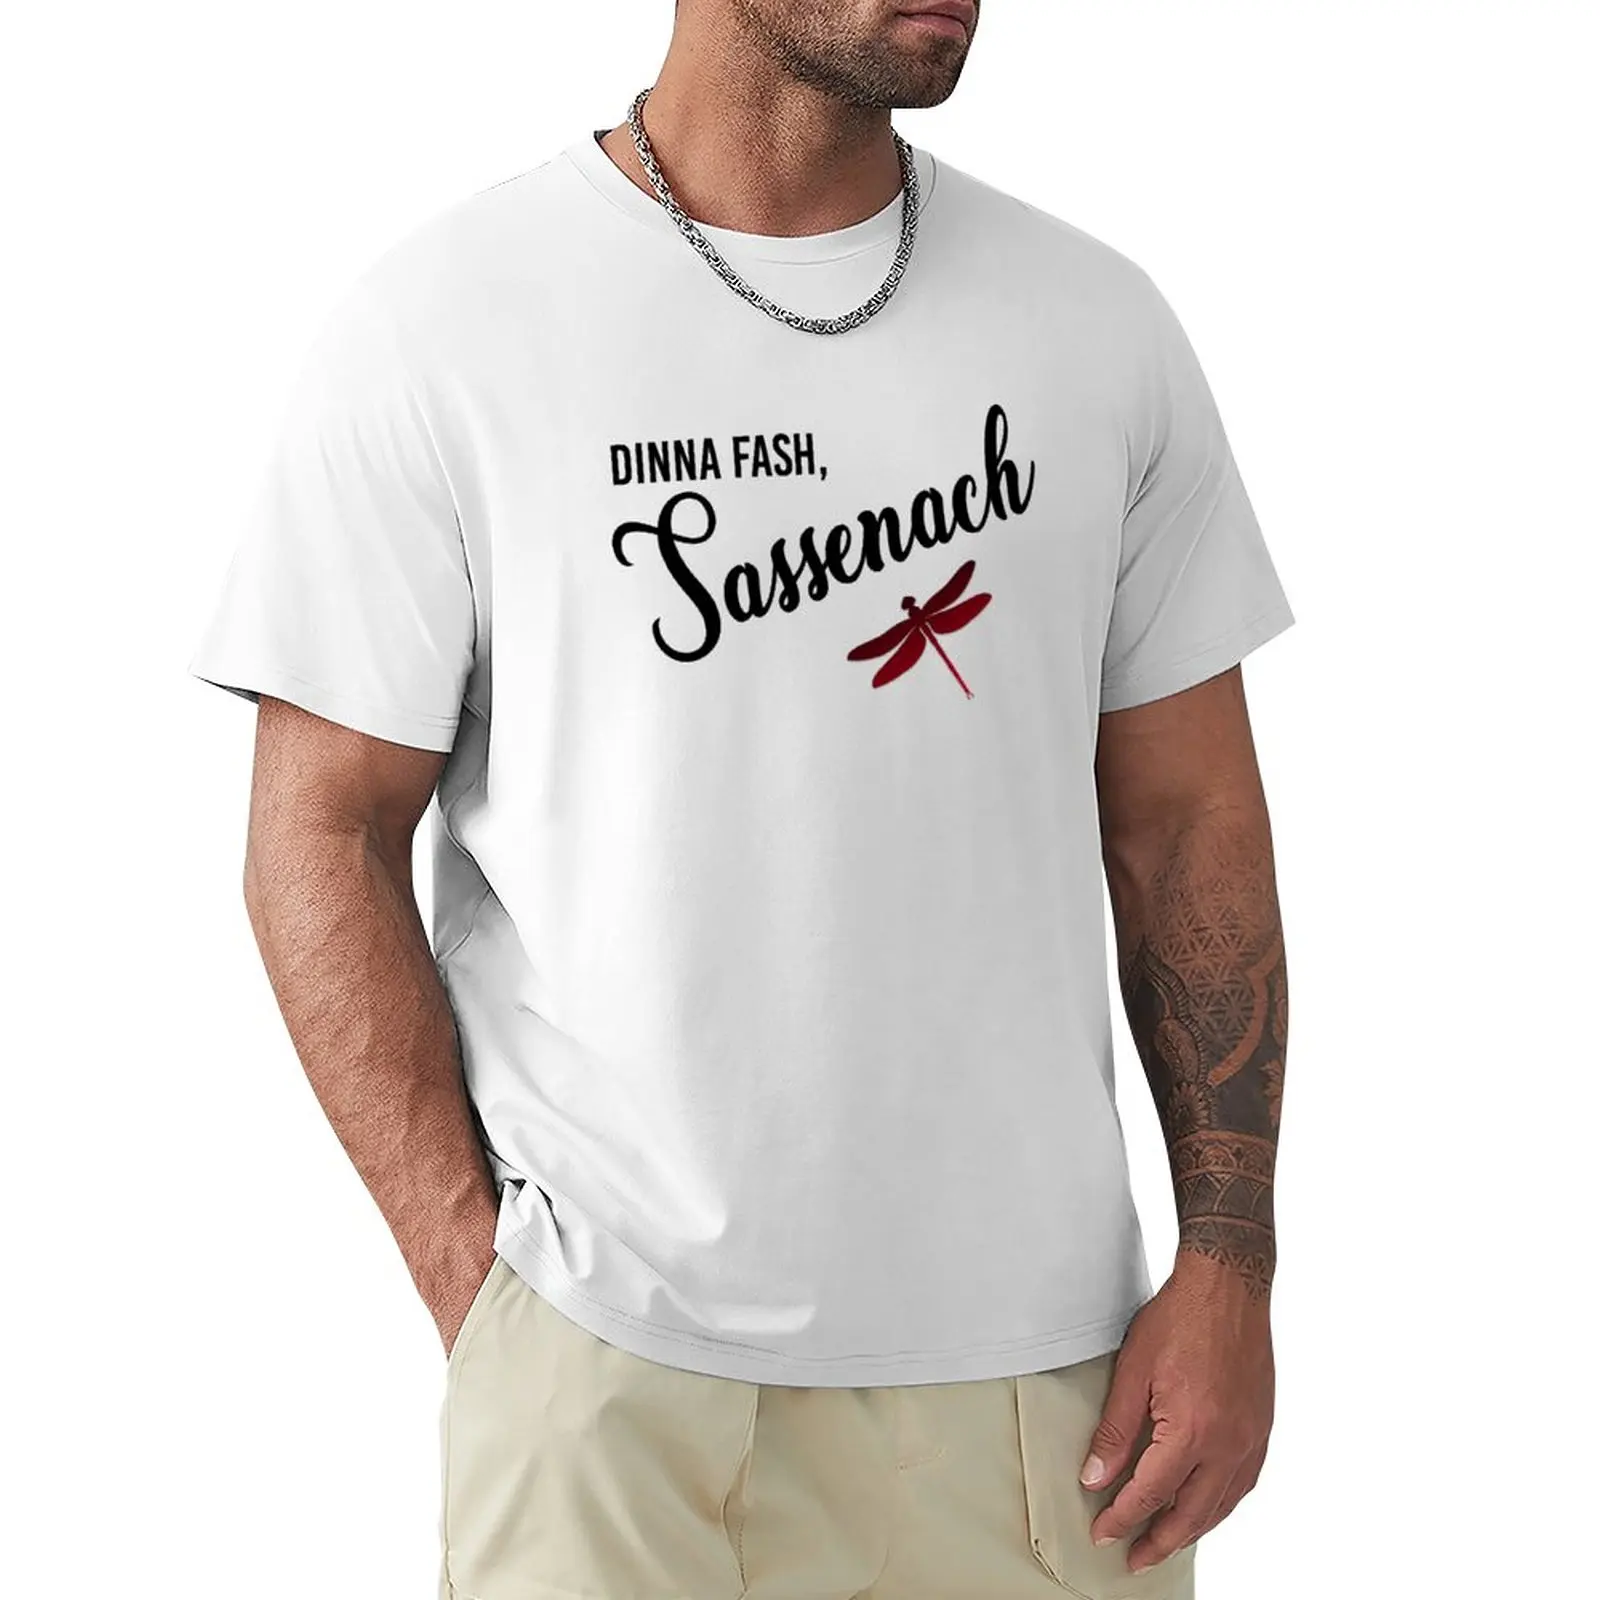 Мужская футболка Dinna fashion, sassenach, свитшот, новое издание, мужские футболки из хлопка Изображение 0